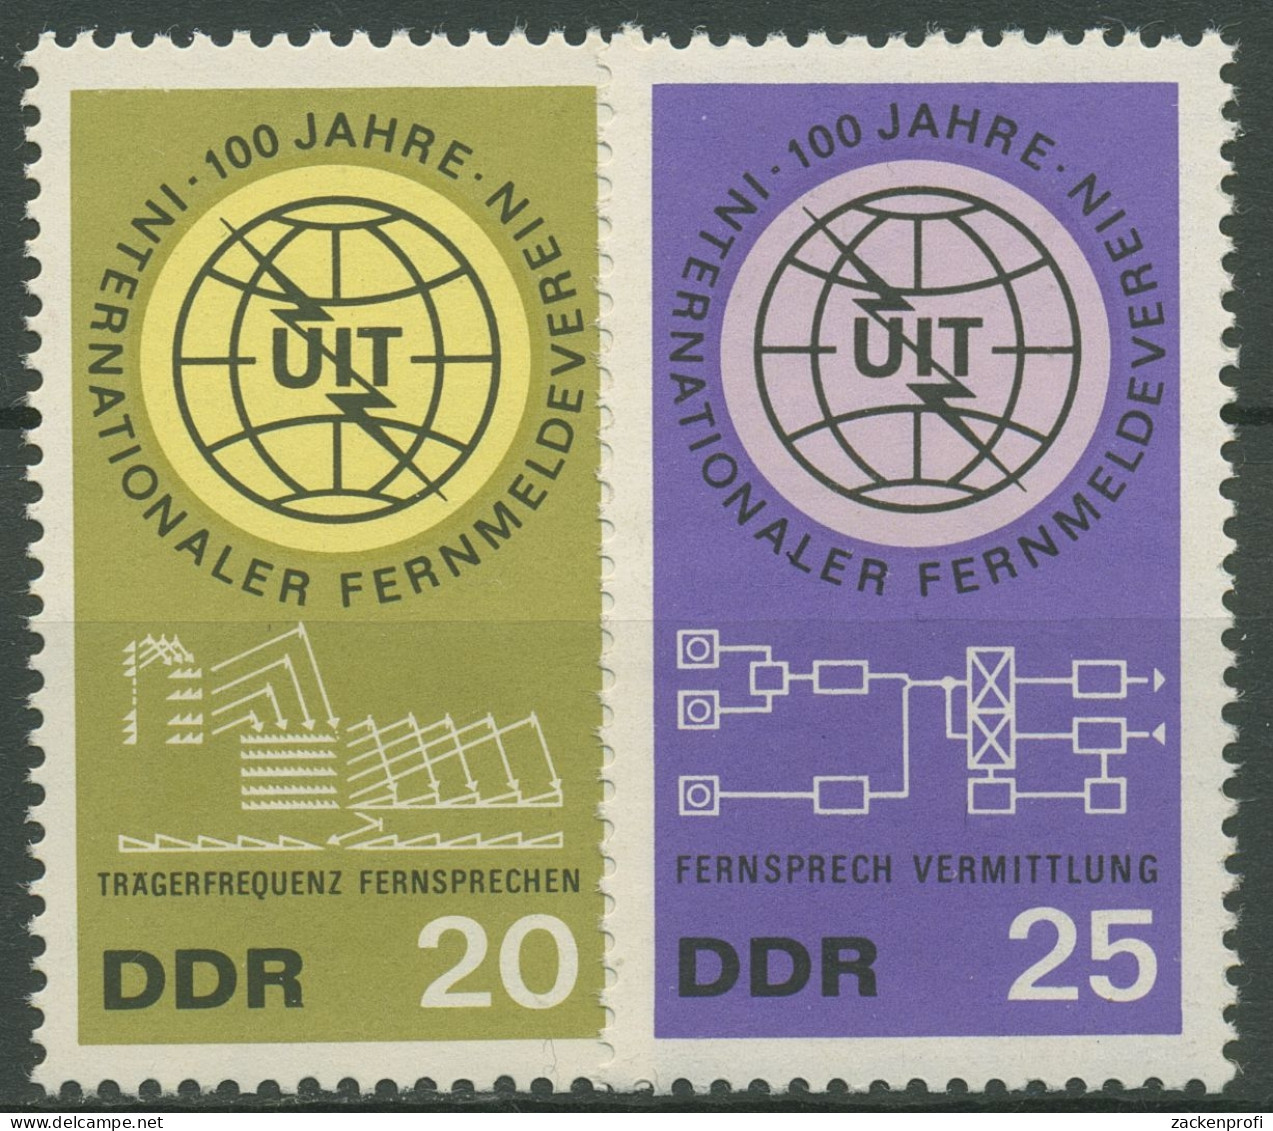 DDR 1965 Internationale Fernmeldeunion ITU 1113/14 Postfrisch - Unused Stamps